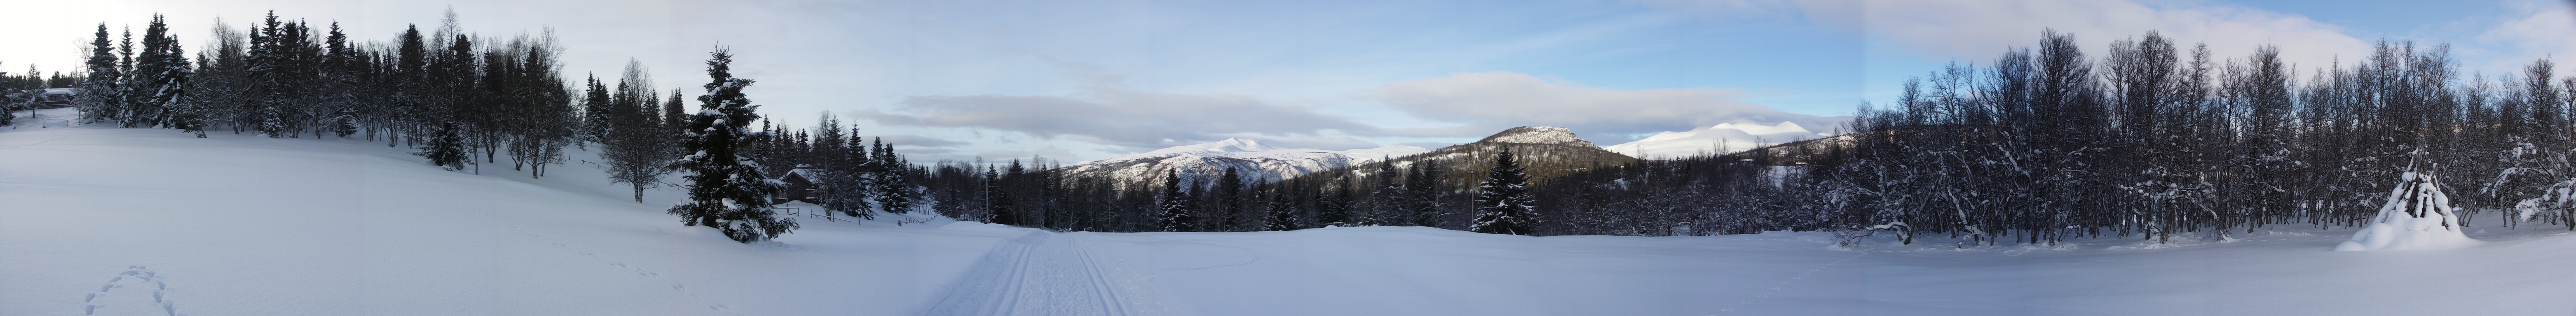 panorama Rondane, Noorwegen. Winter 2008